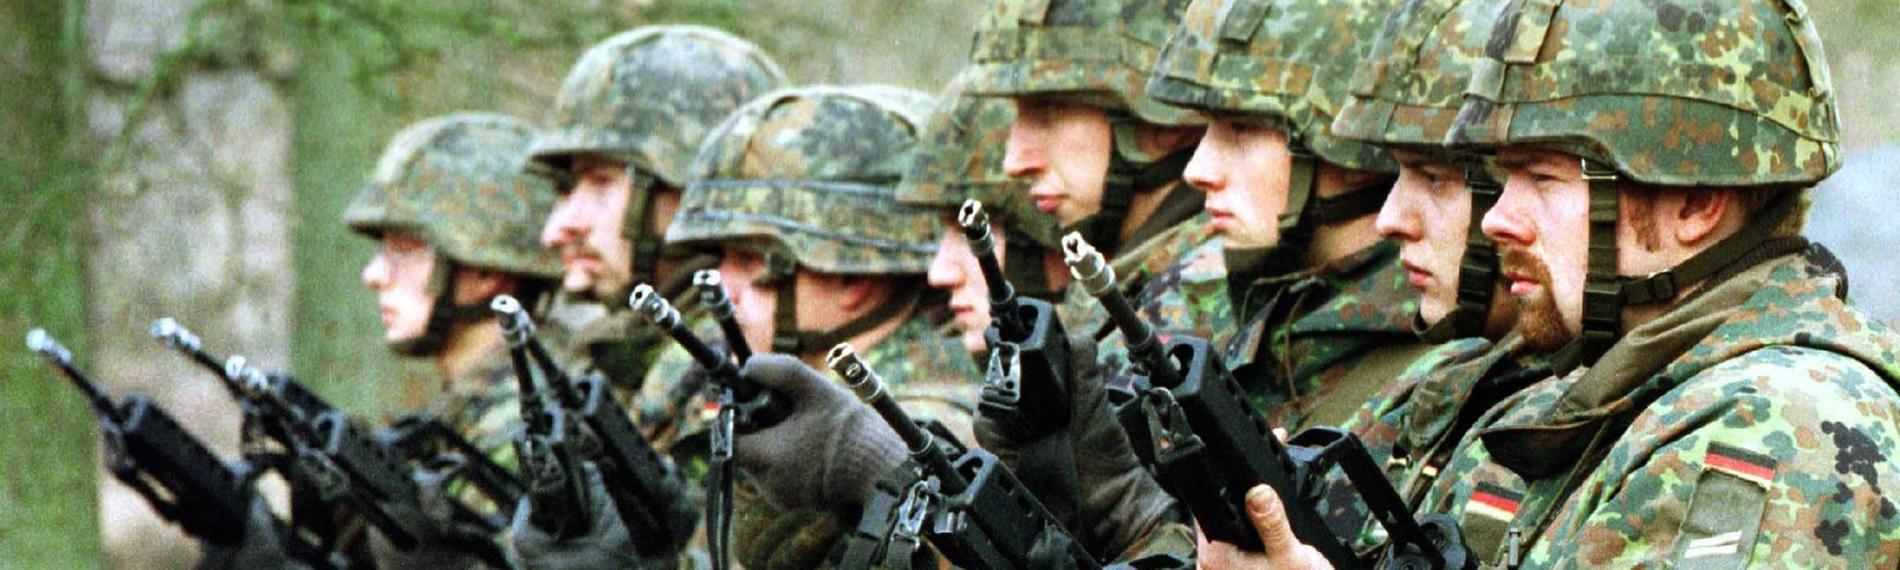 "Geschichte treffen: Kosovo '99 - Bundeswehr im Kampfeinsatz ": Bundeswehrsoldaten üben für Kosovo-Einsatz, Archiv 1999.